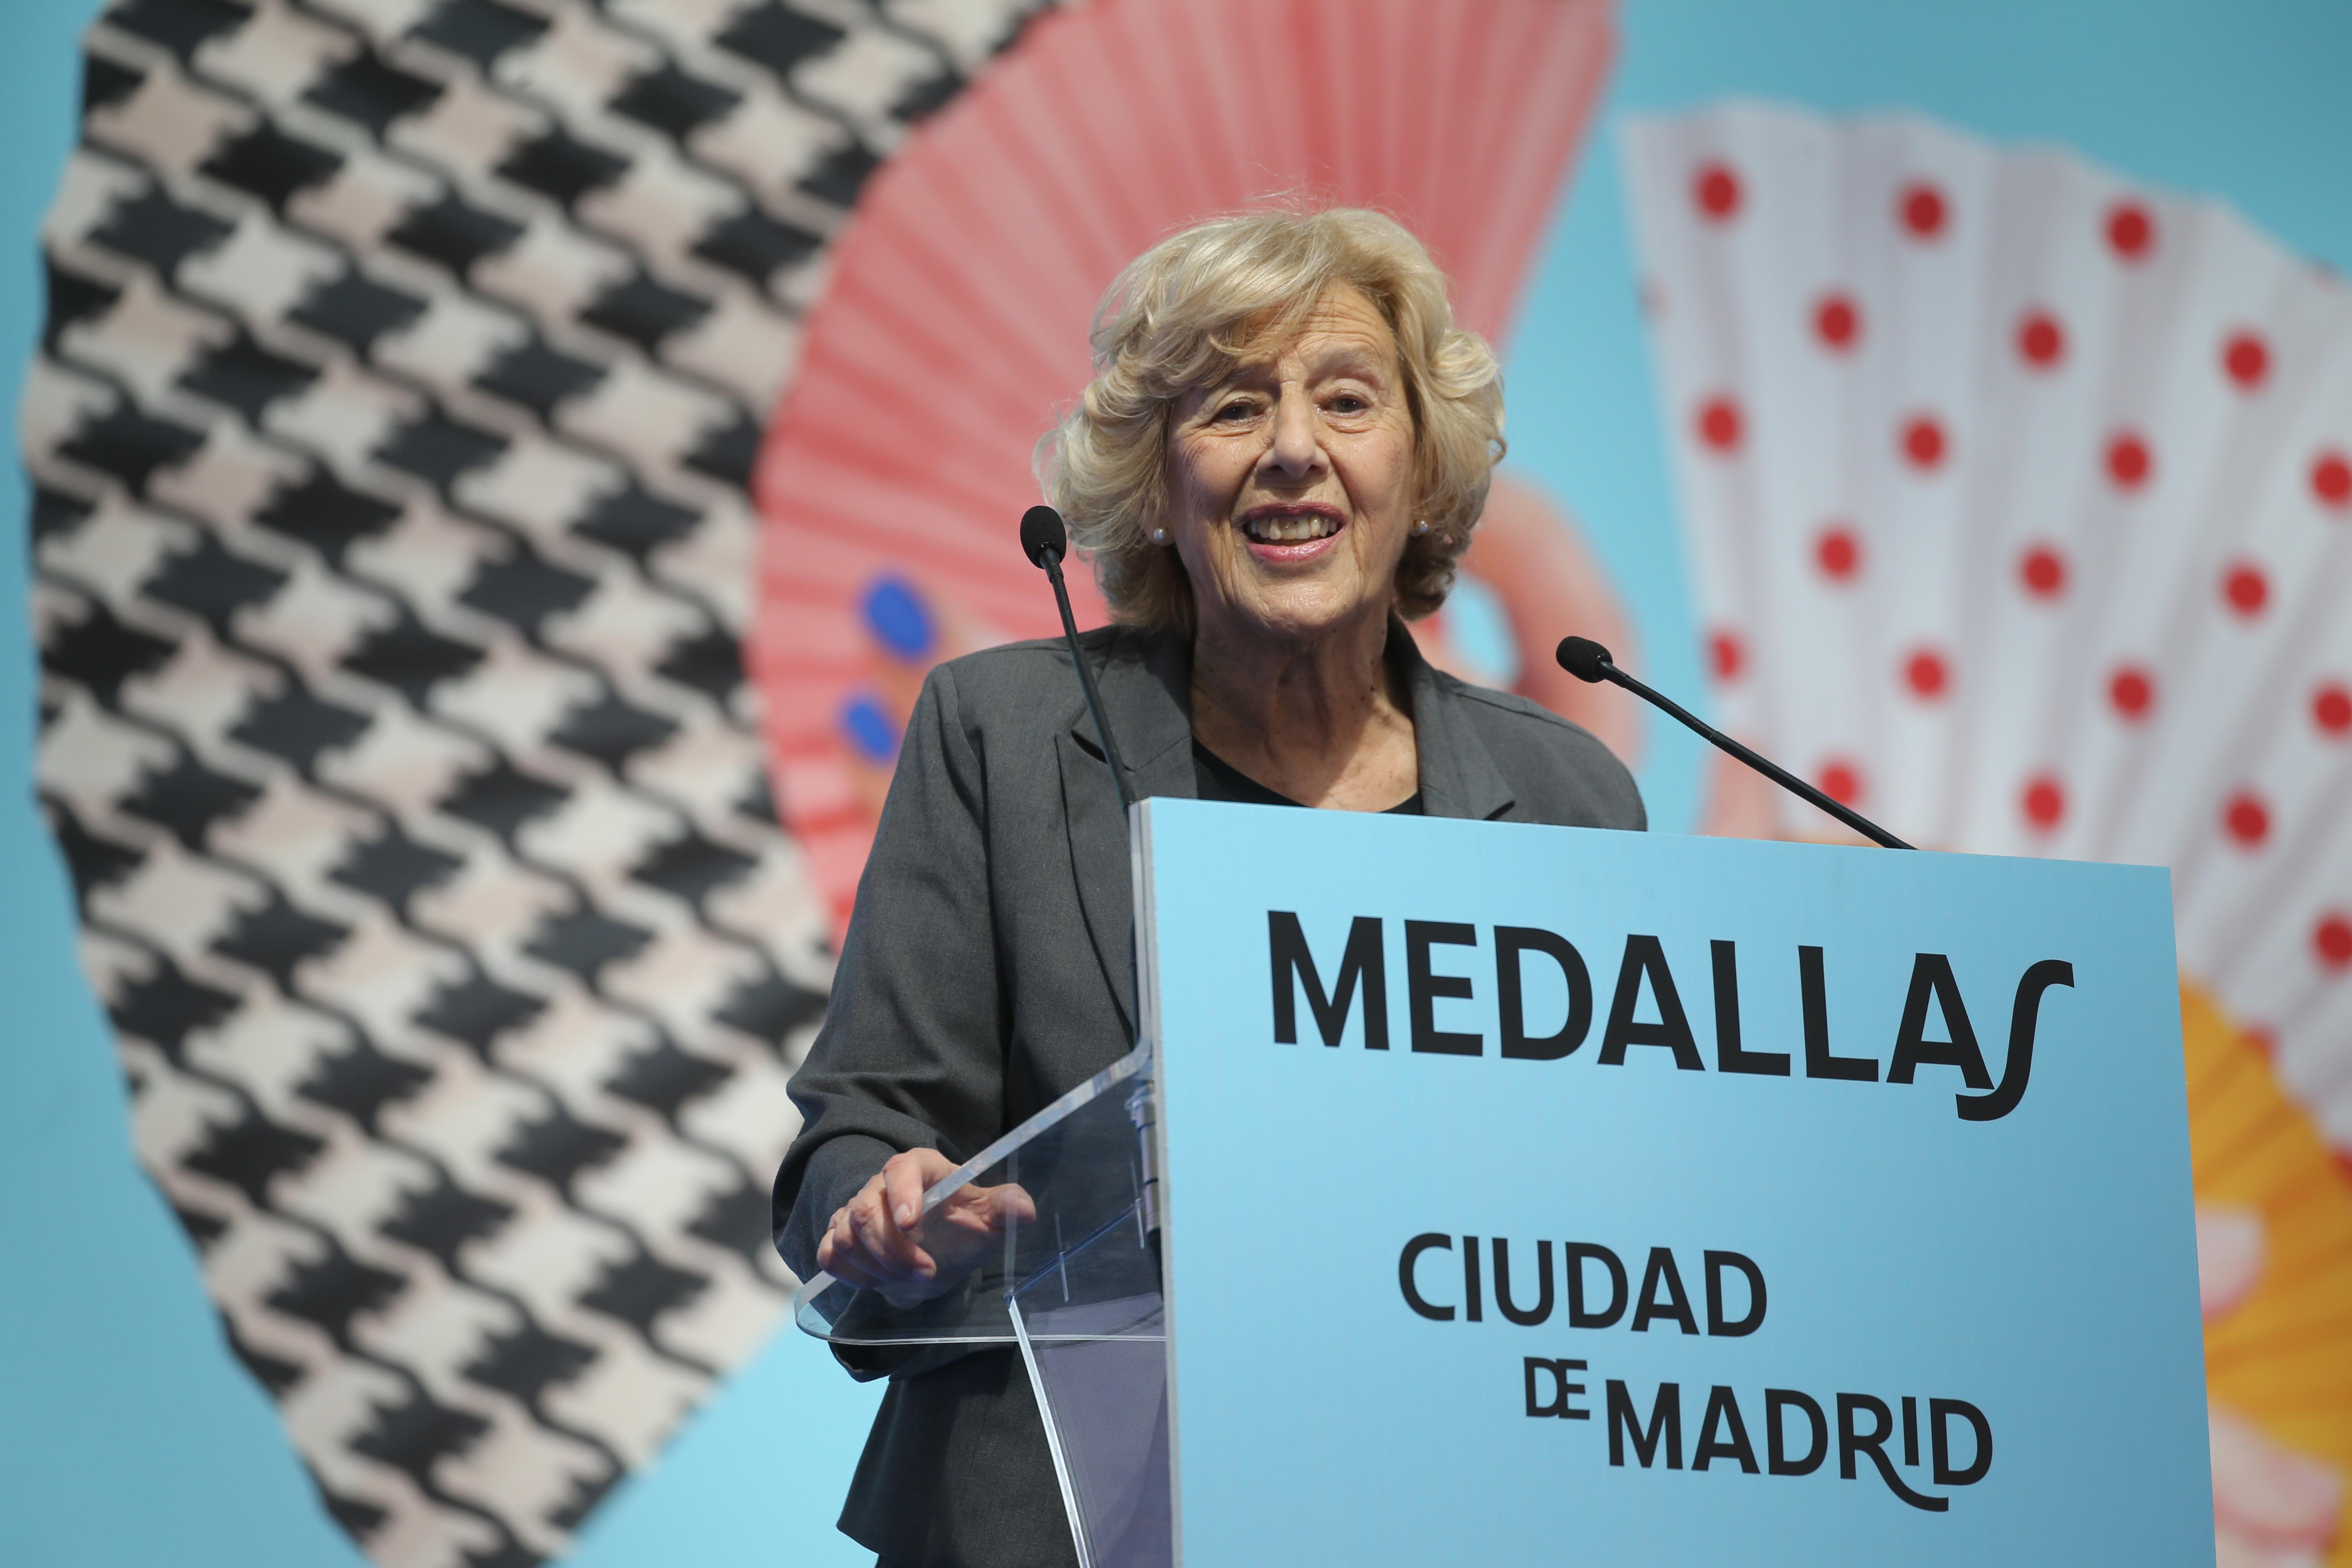 La exalcaldesa de Madrid Manuela Carmena interviene tras recibir una de las Medallas de Honor, Oro y Plata del Ayuntamiento de Madrid con motivo de la festividad de San Isidro, a 15 de mayo de 2021